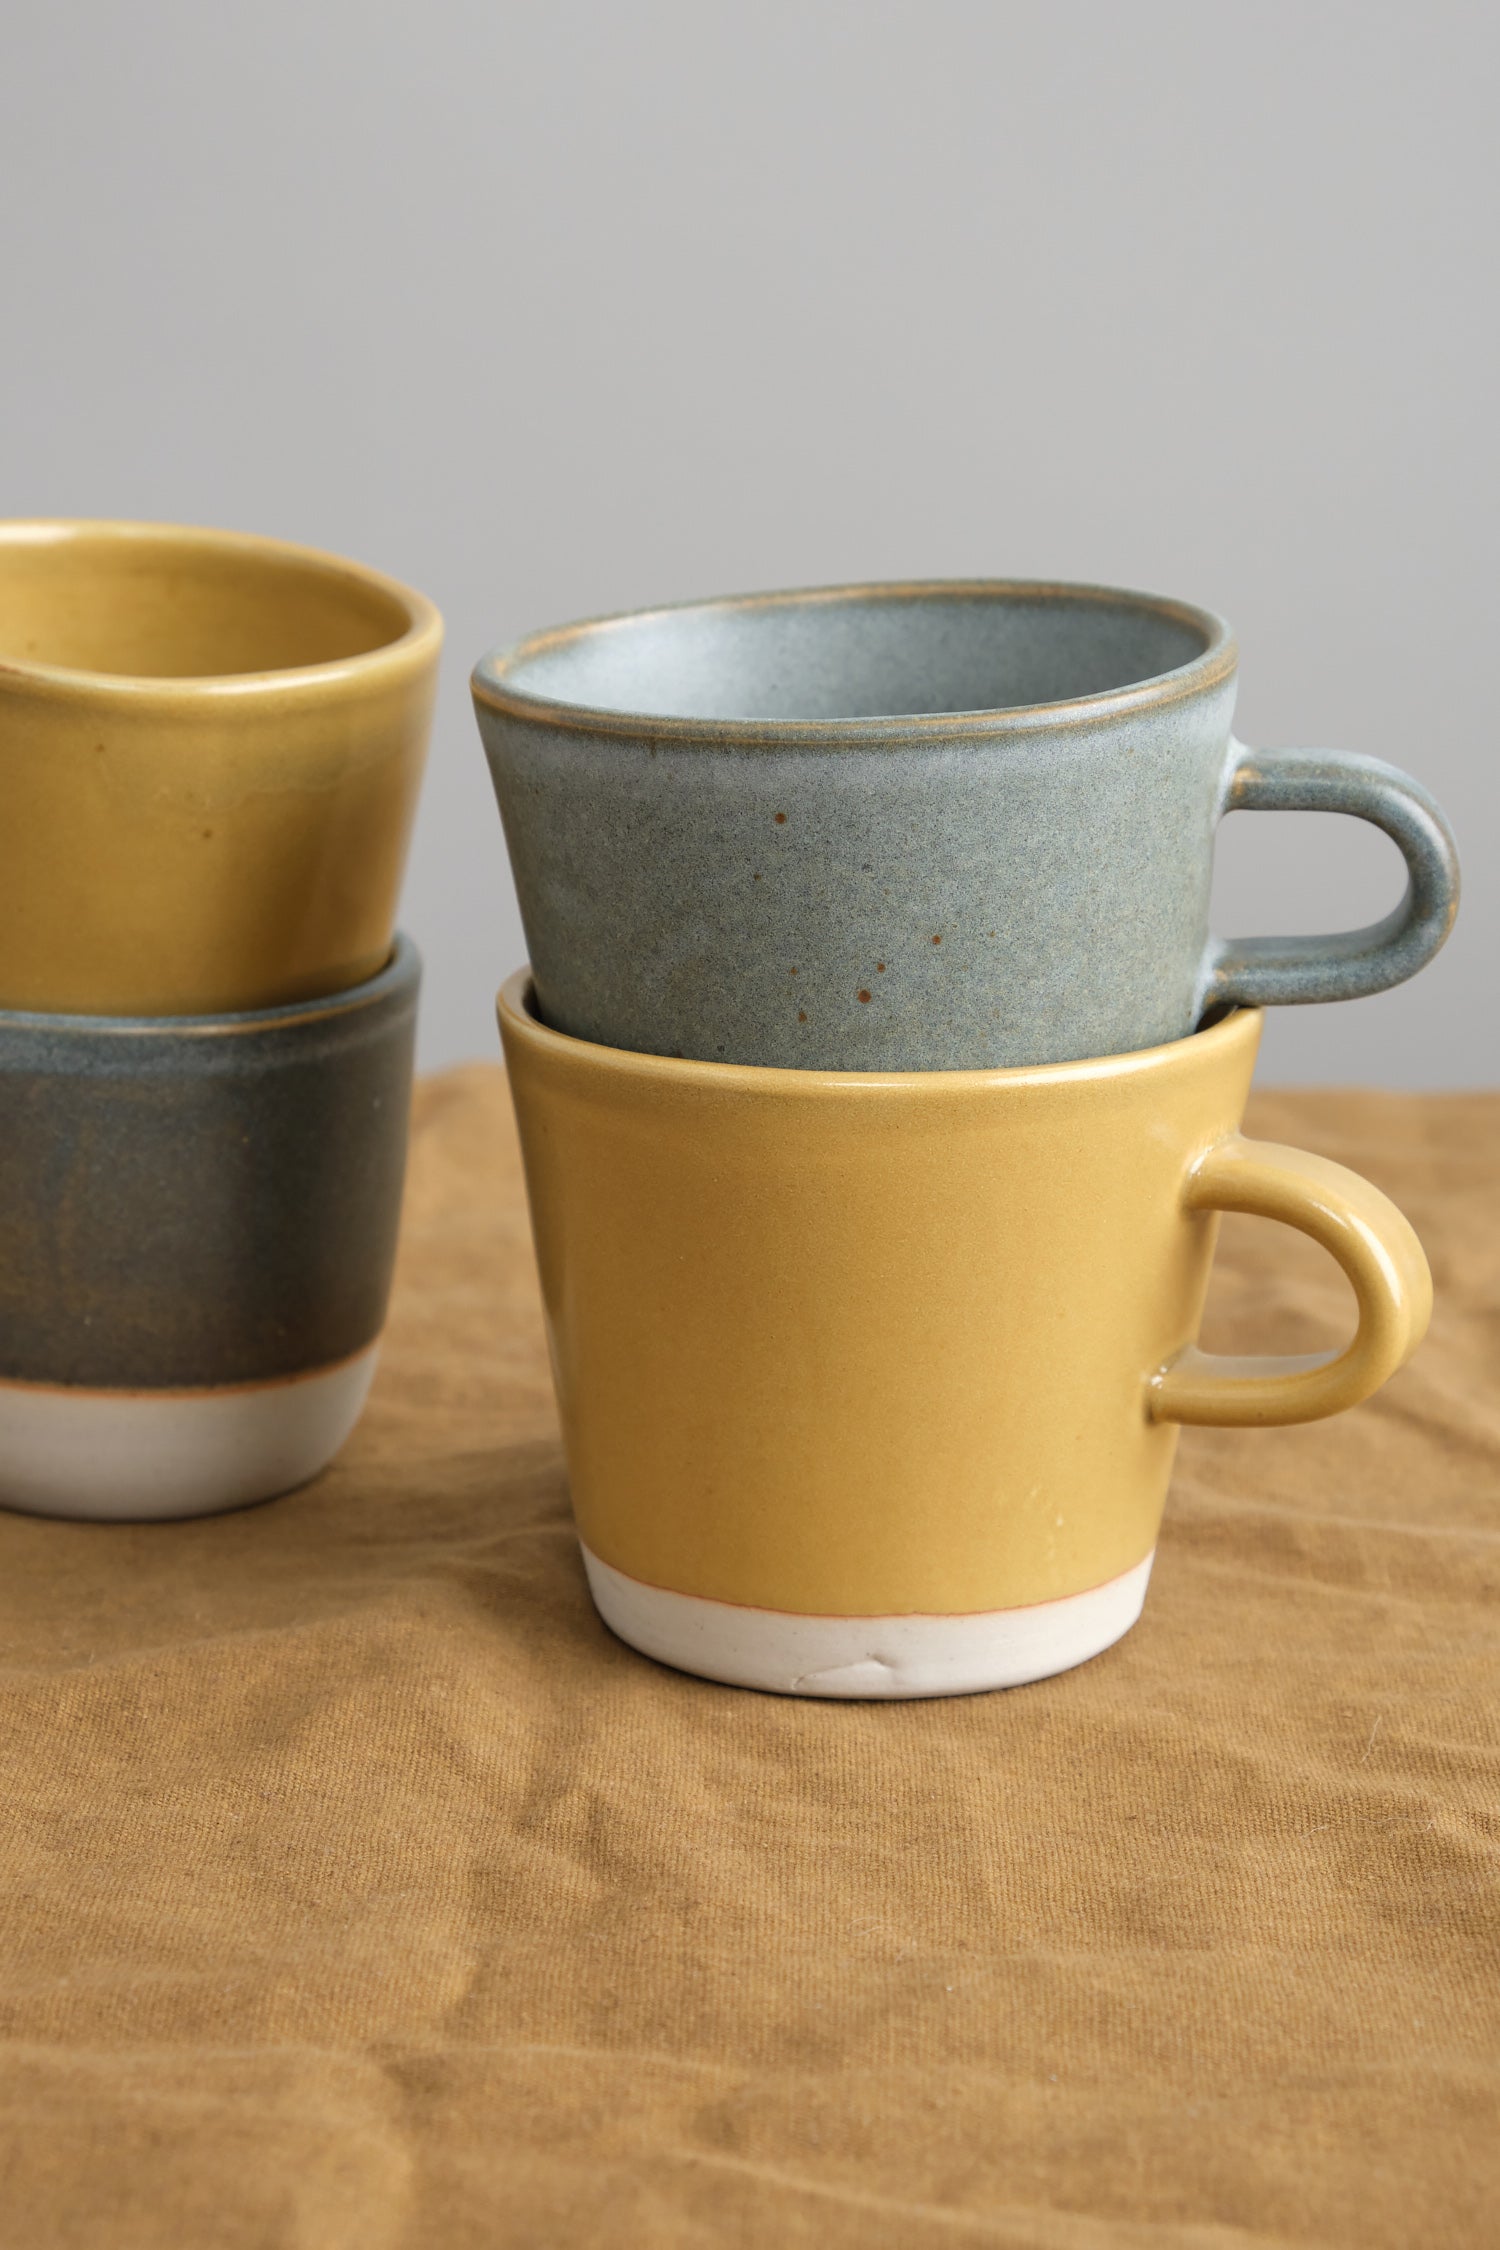 Stacked mugs